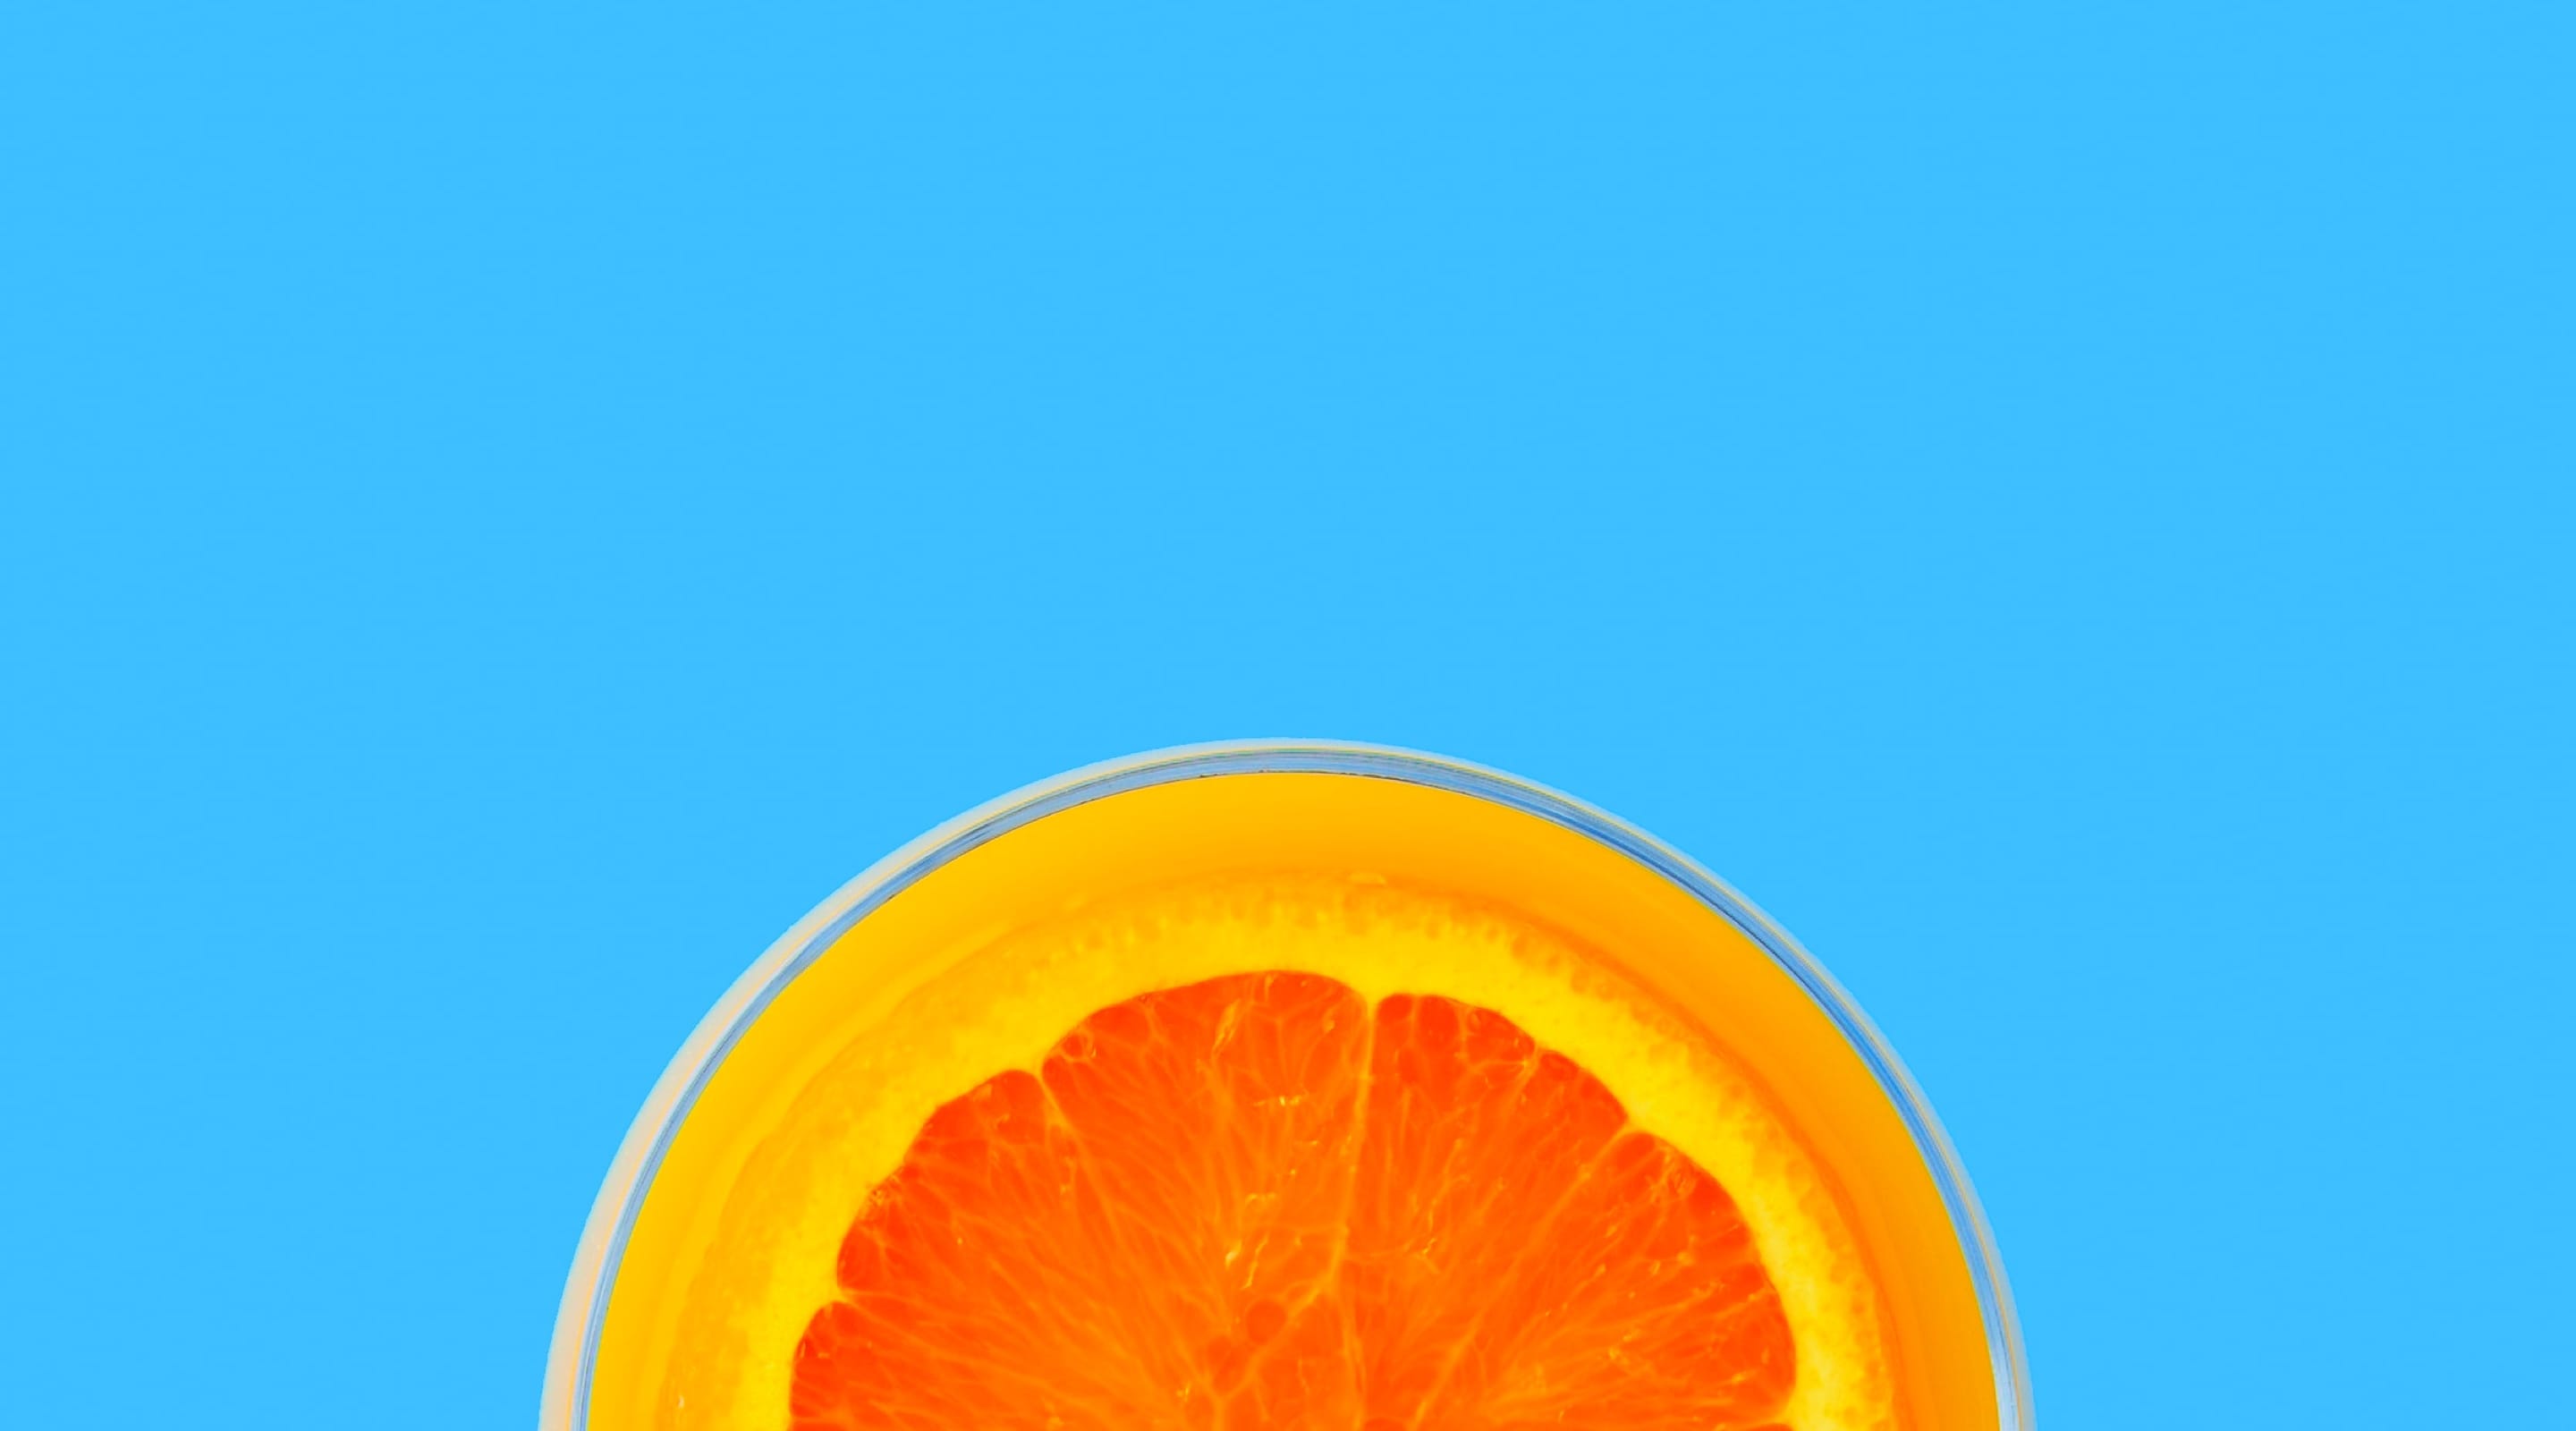 header orange